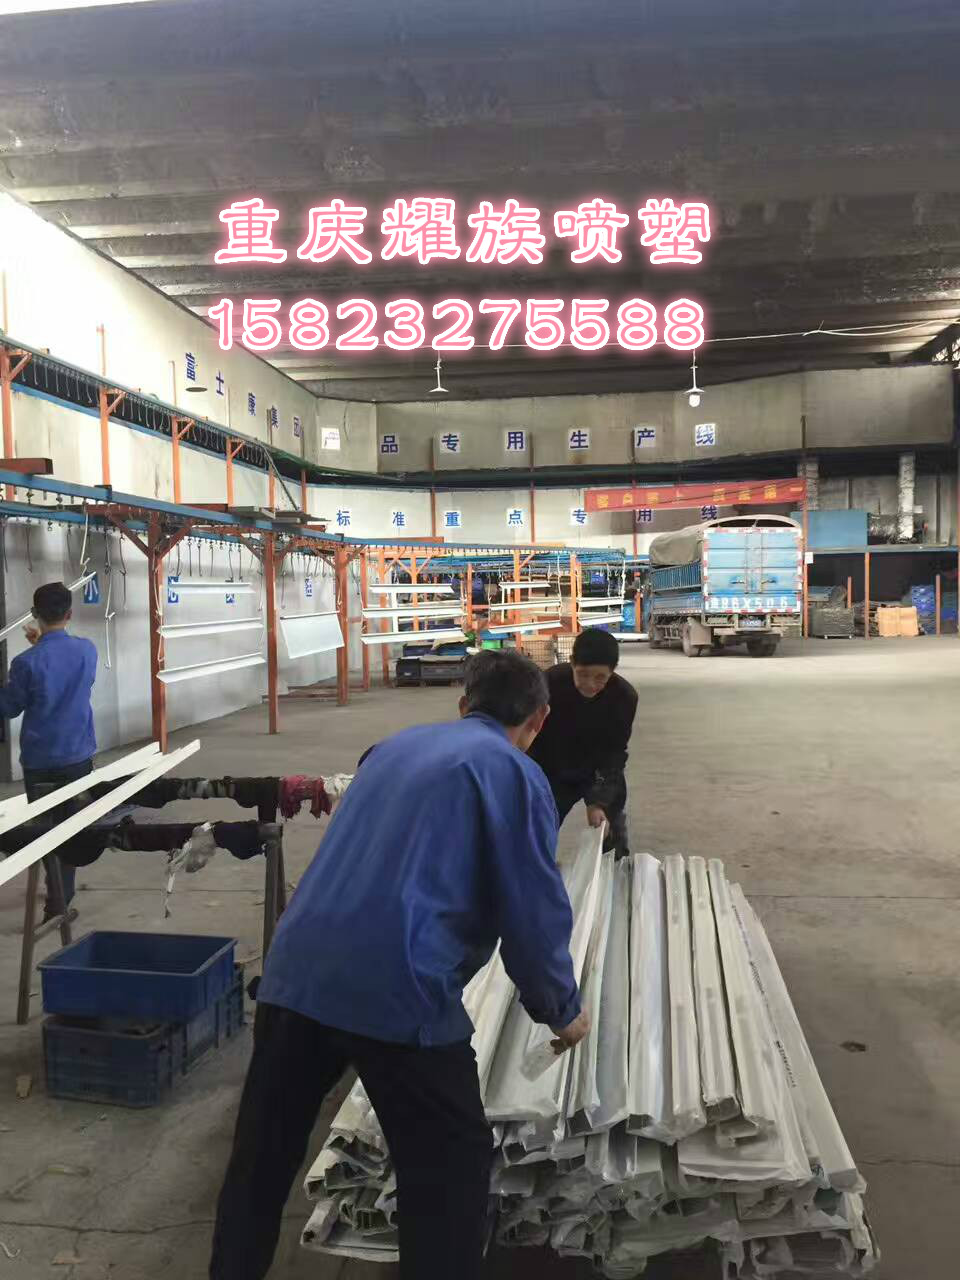 重庆市重庆木纹热转印厂家重庆木纹热转印加工厂、重庆木纹热转印公司